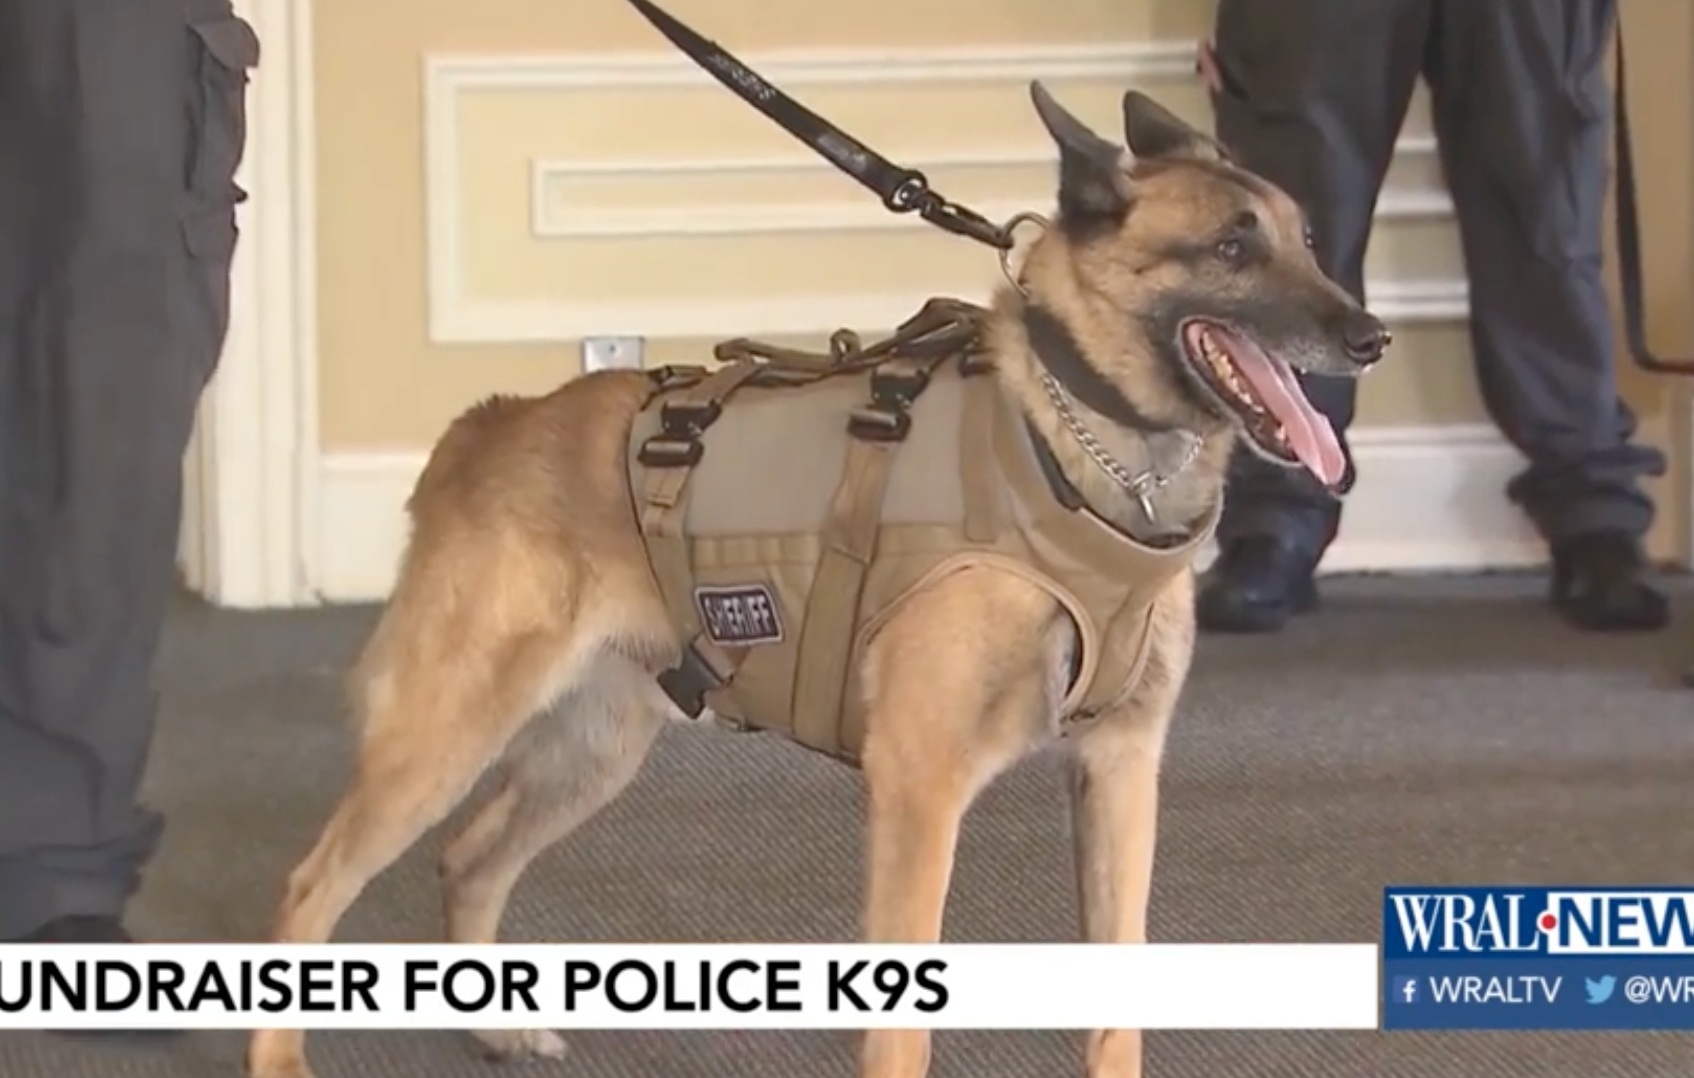 Fundraiser helps provide bulletproof vests for police dogs